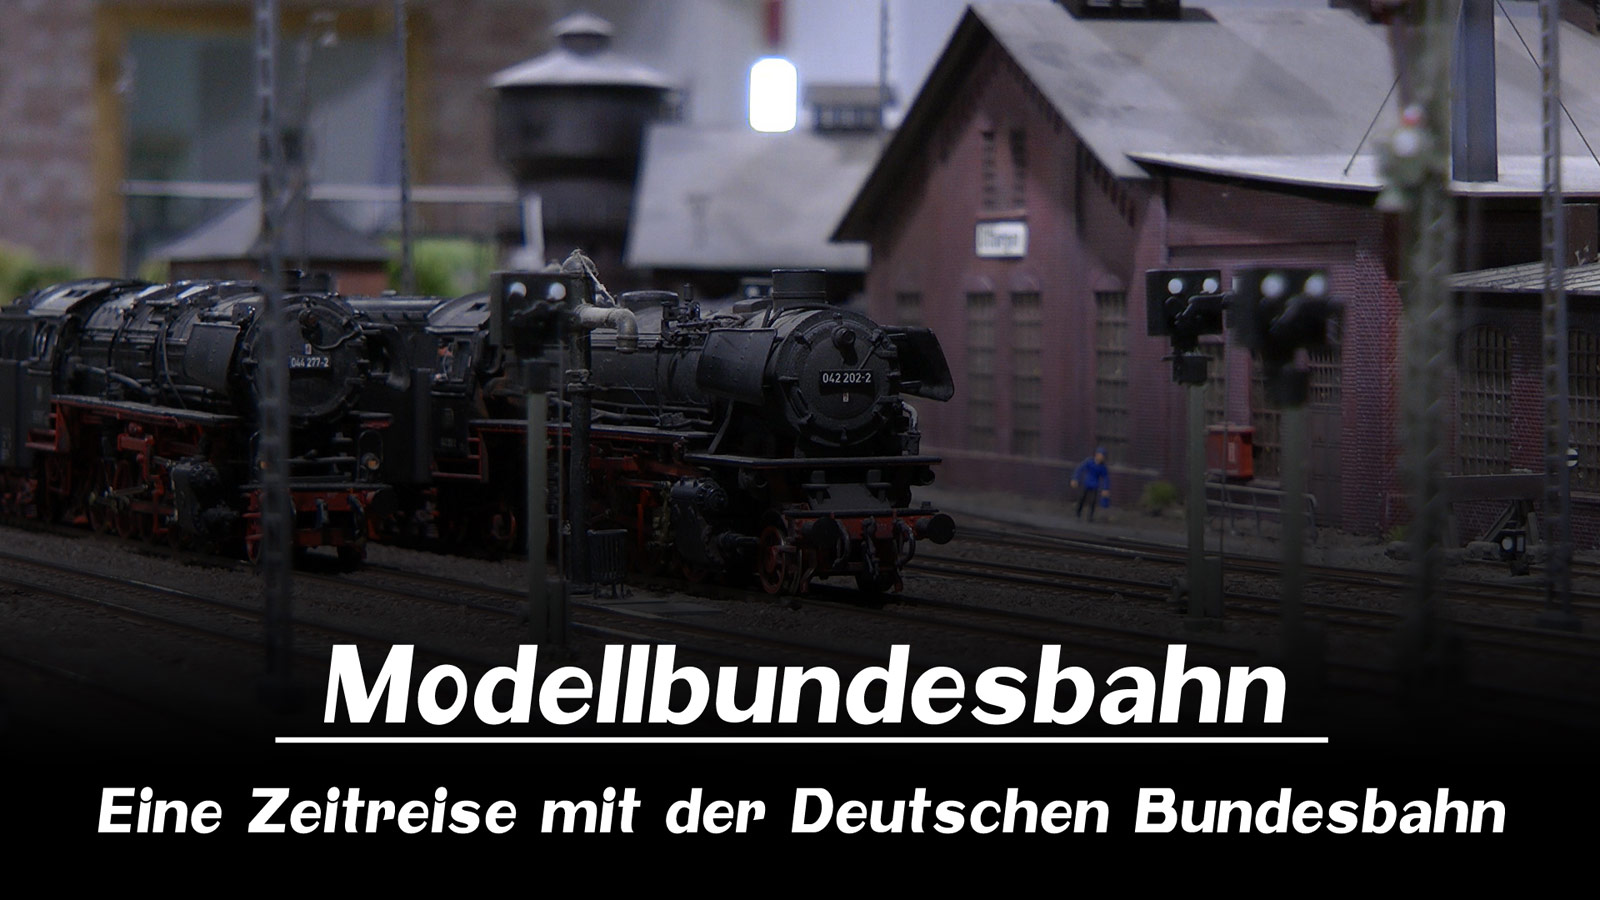 Pennula bei Prime Video: Modellbundesbahn - Eine Zeitreise mit der Deutschen Bundesbahn